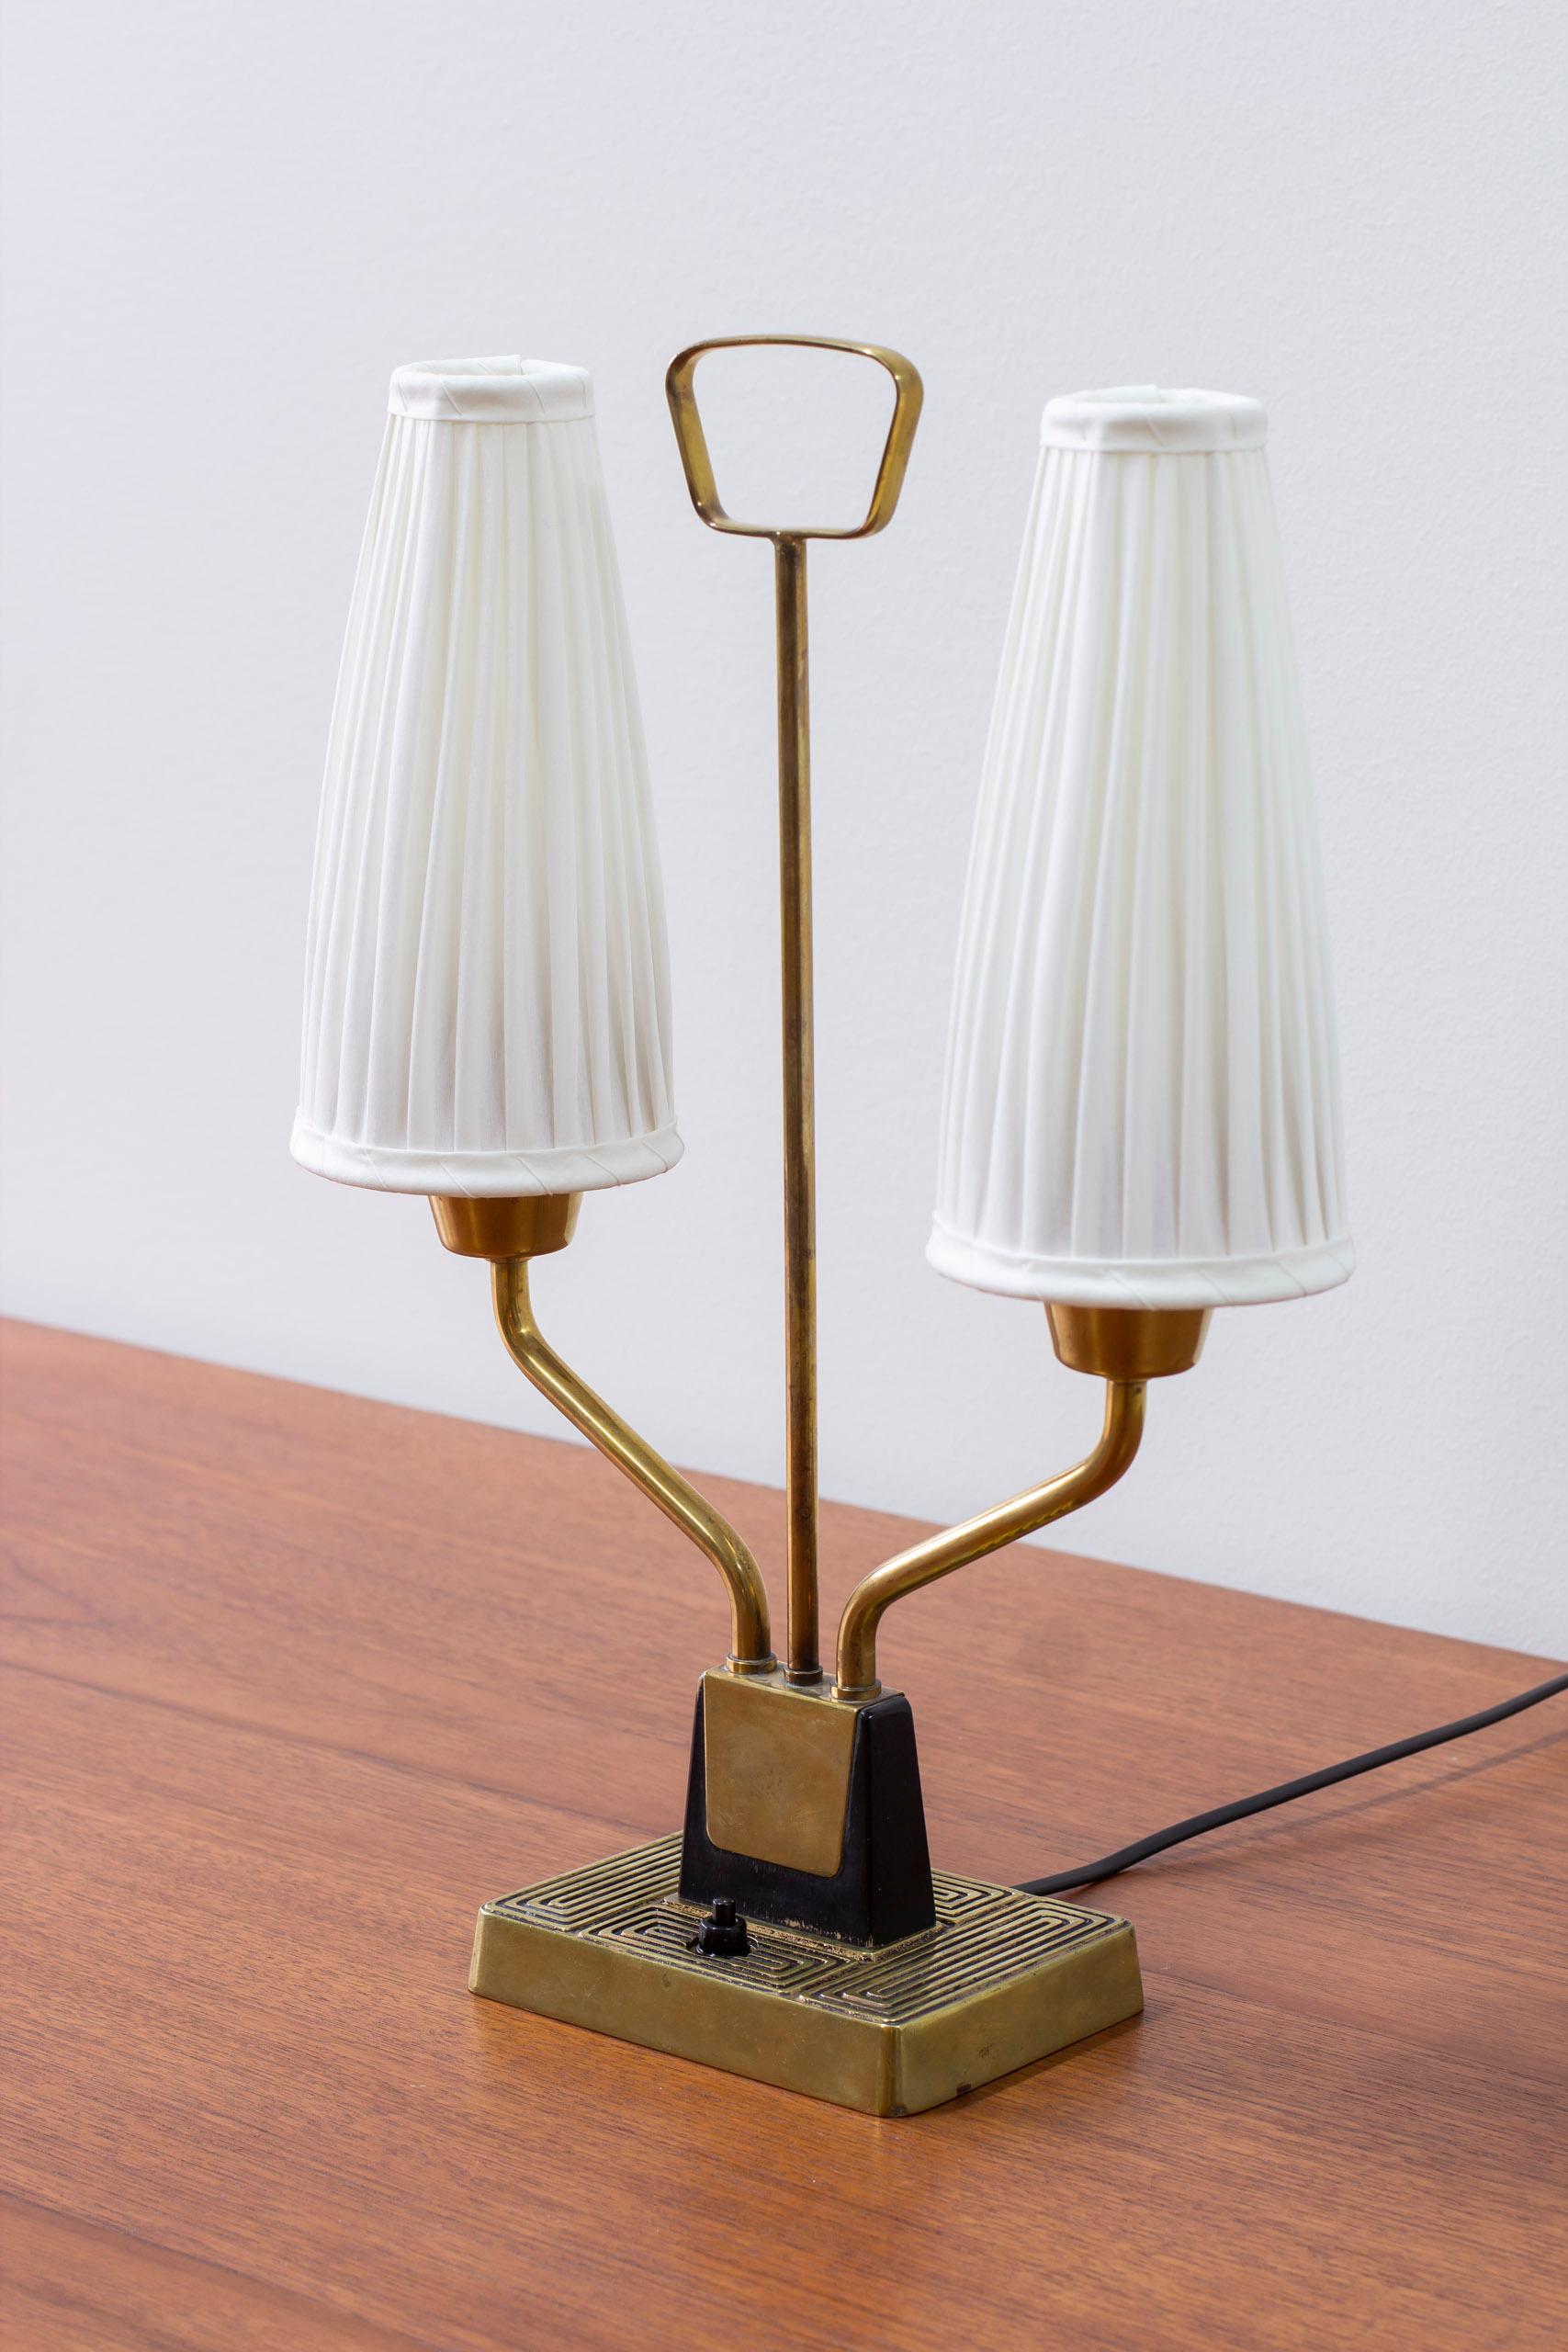 Lampe de table produite en Suède par ASEA Belysning dans les années 1950. Fabriqué en laiton et en bois laqué noir avec de nouveaux abat-jours cousus à la main en tissu chintz. Interrupteur de la base de la lampe en état de marche. Très bon état